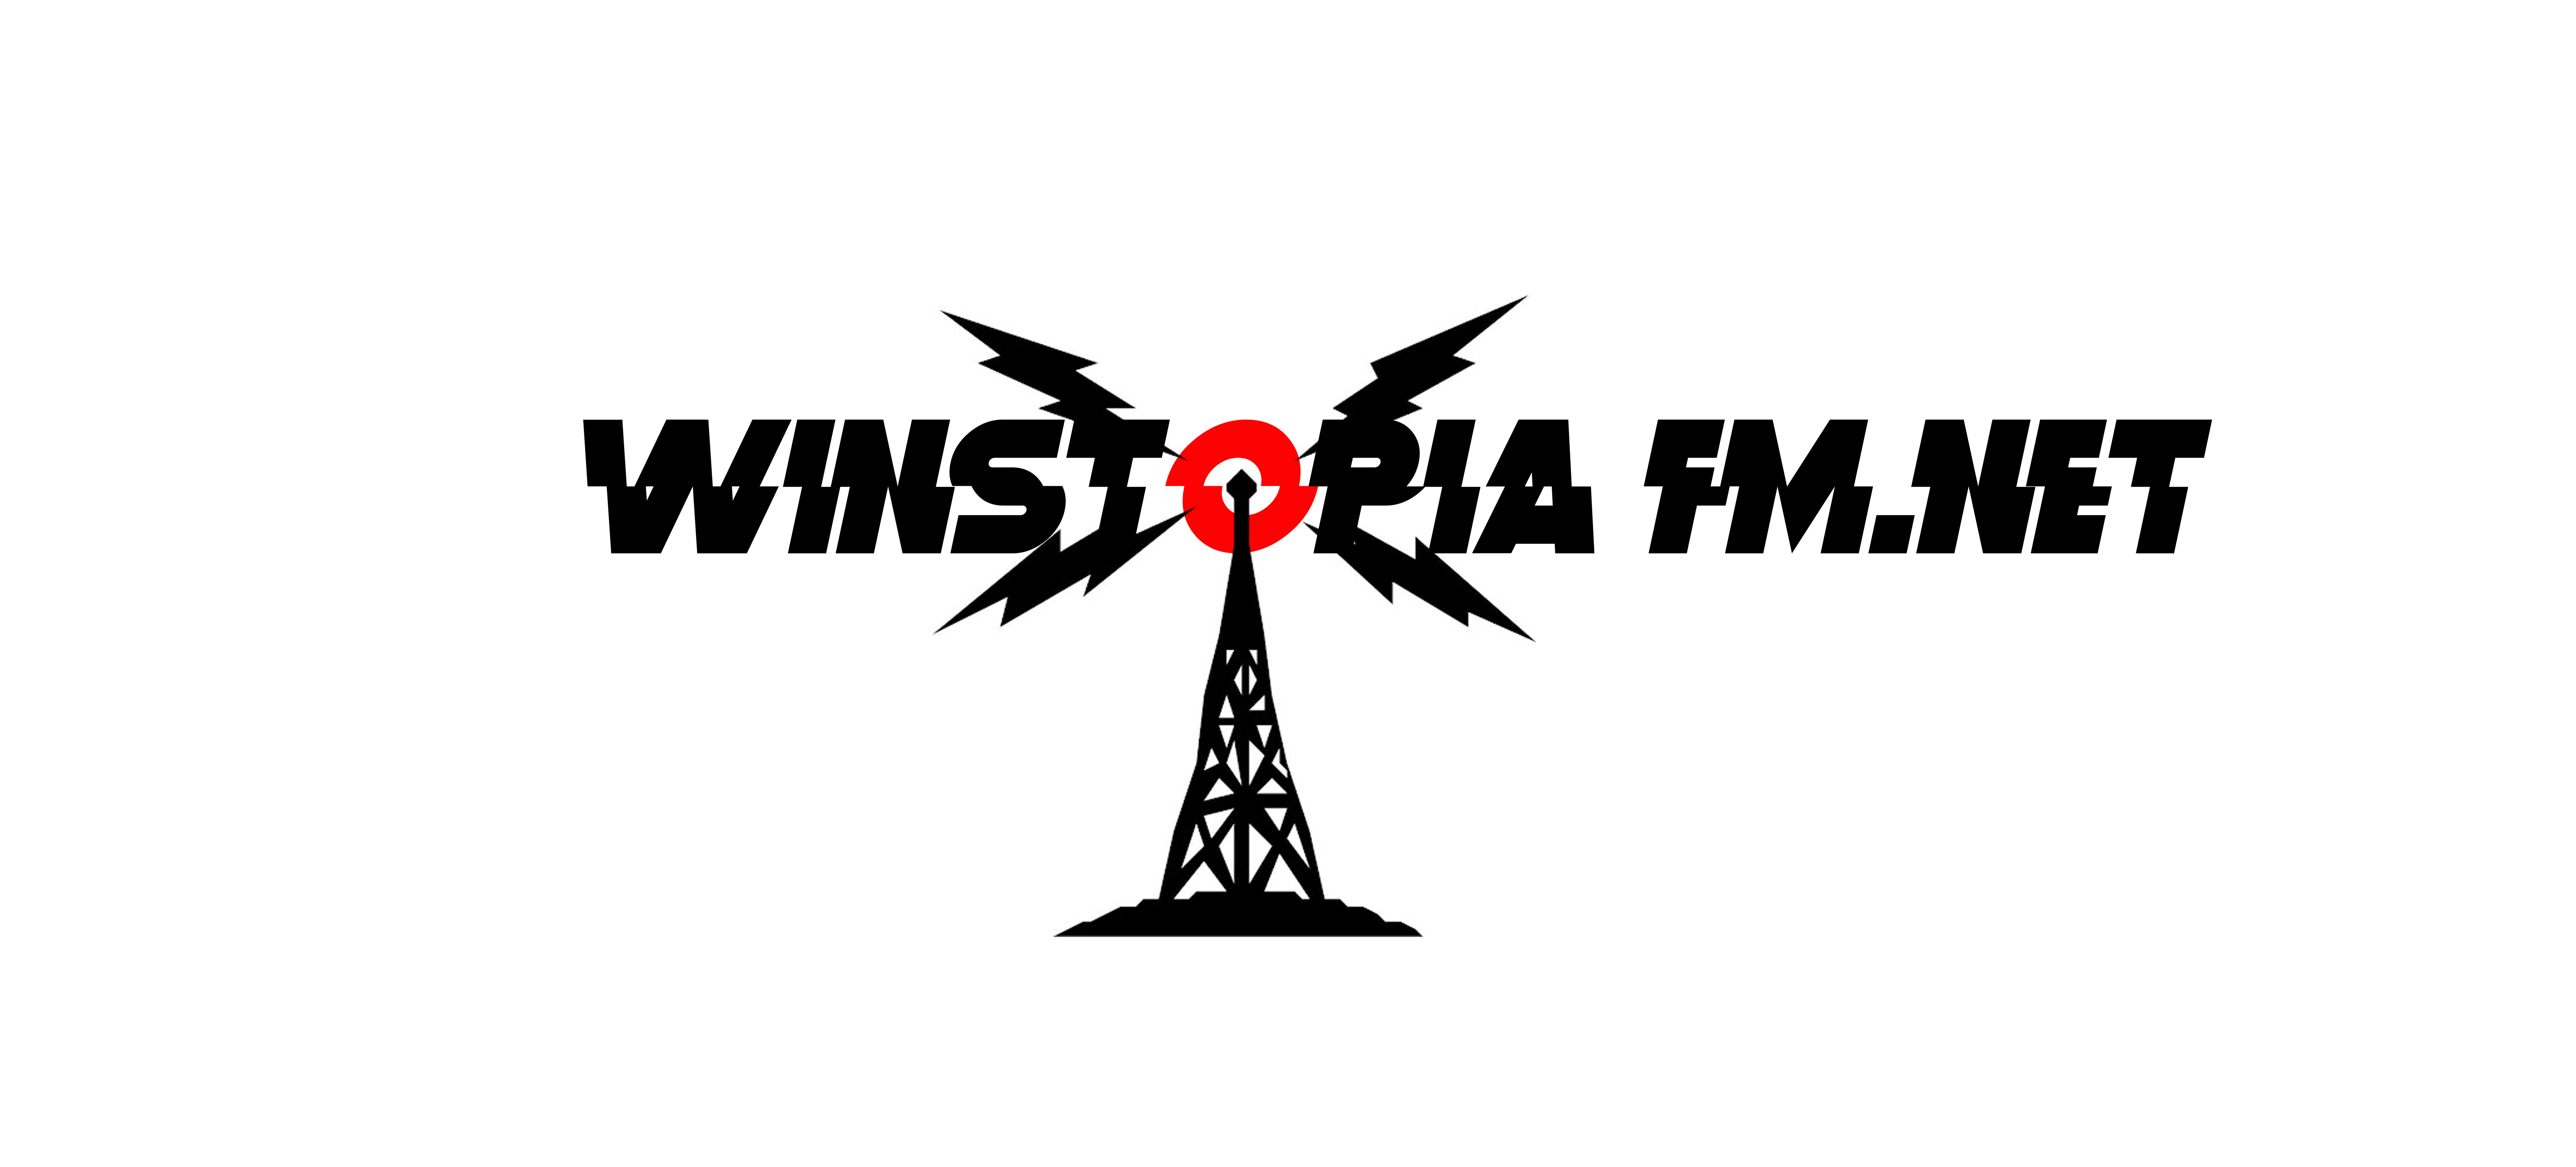 Winstopia FM